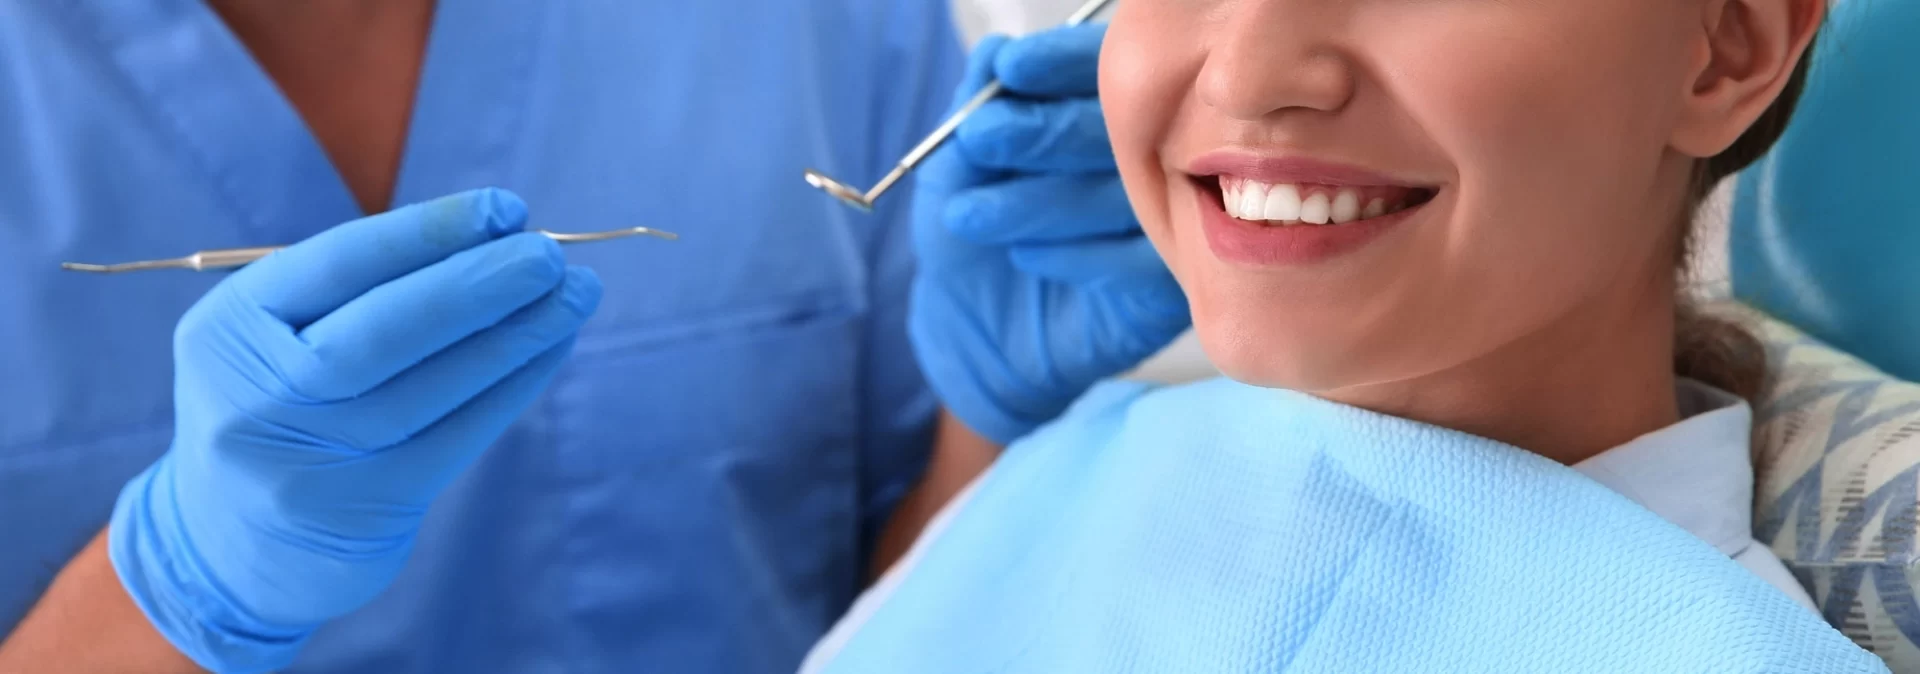 dental patient hero image